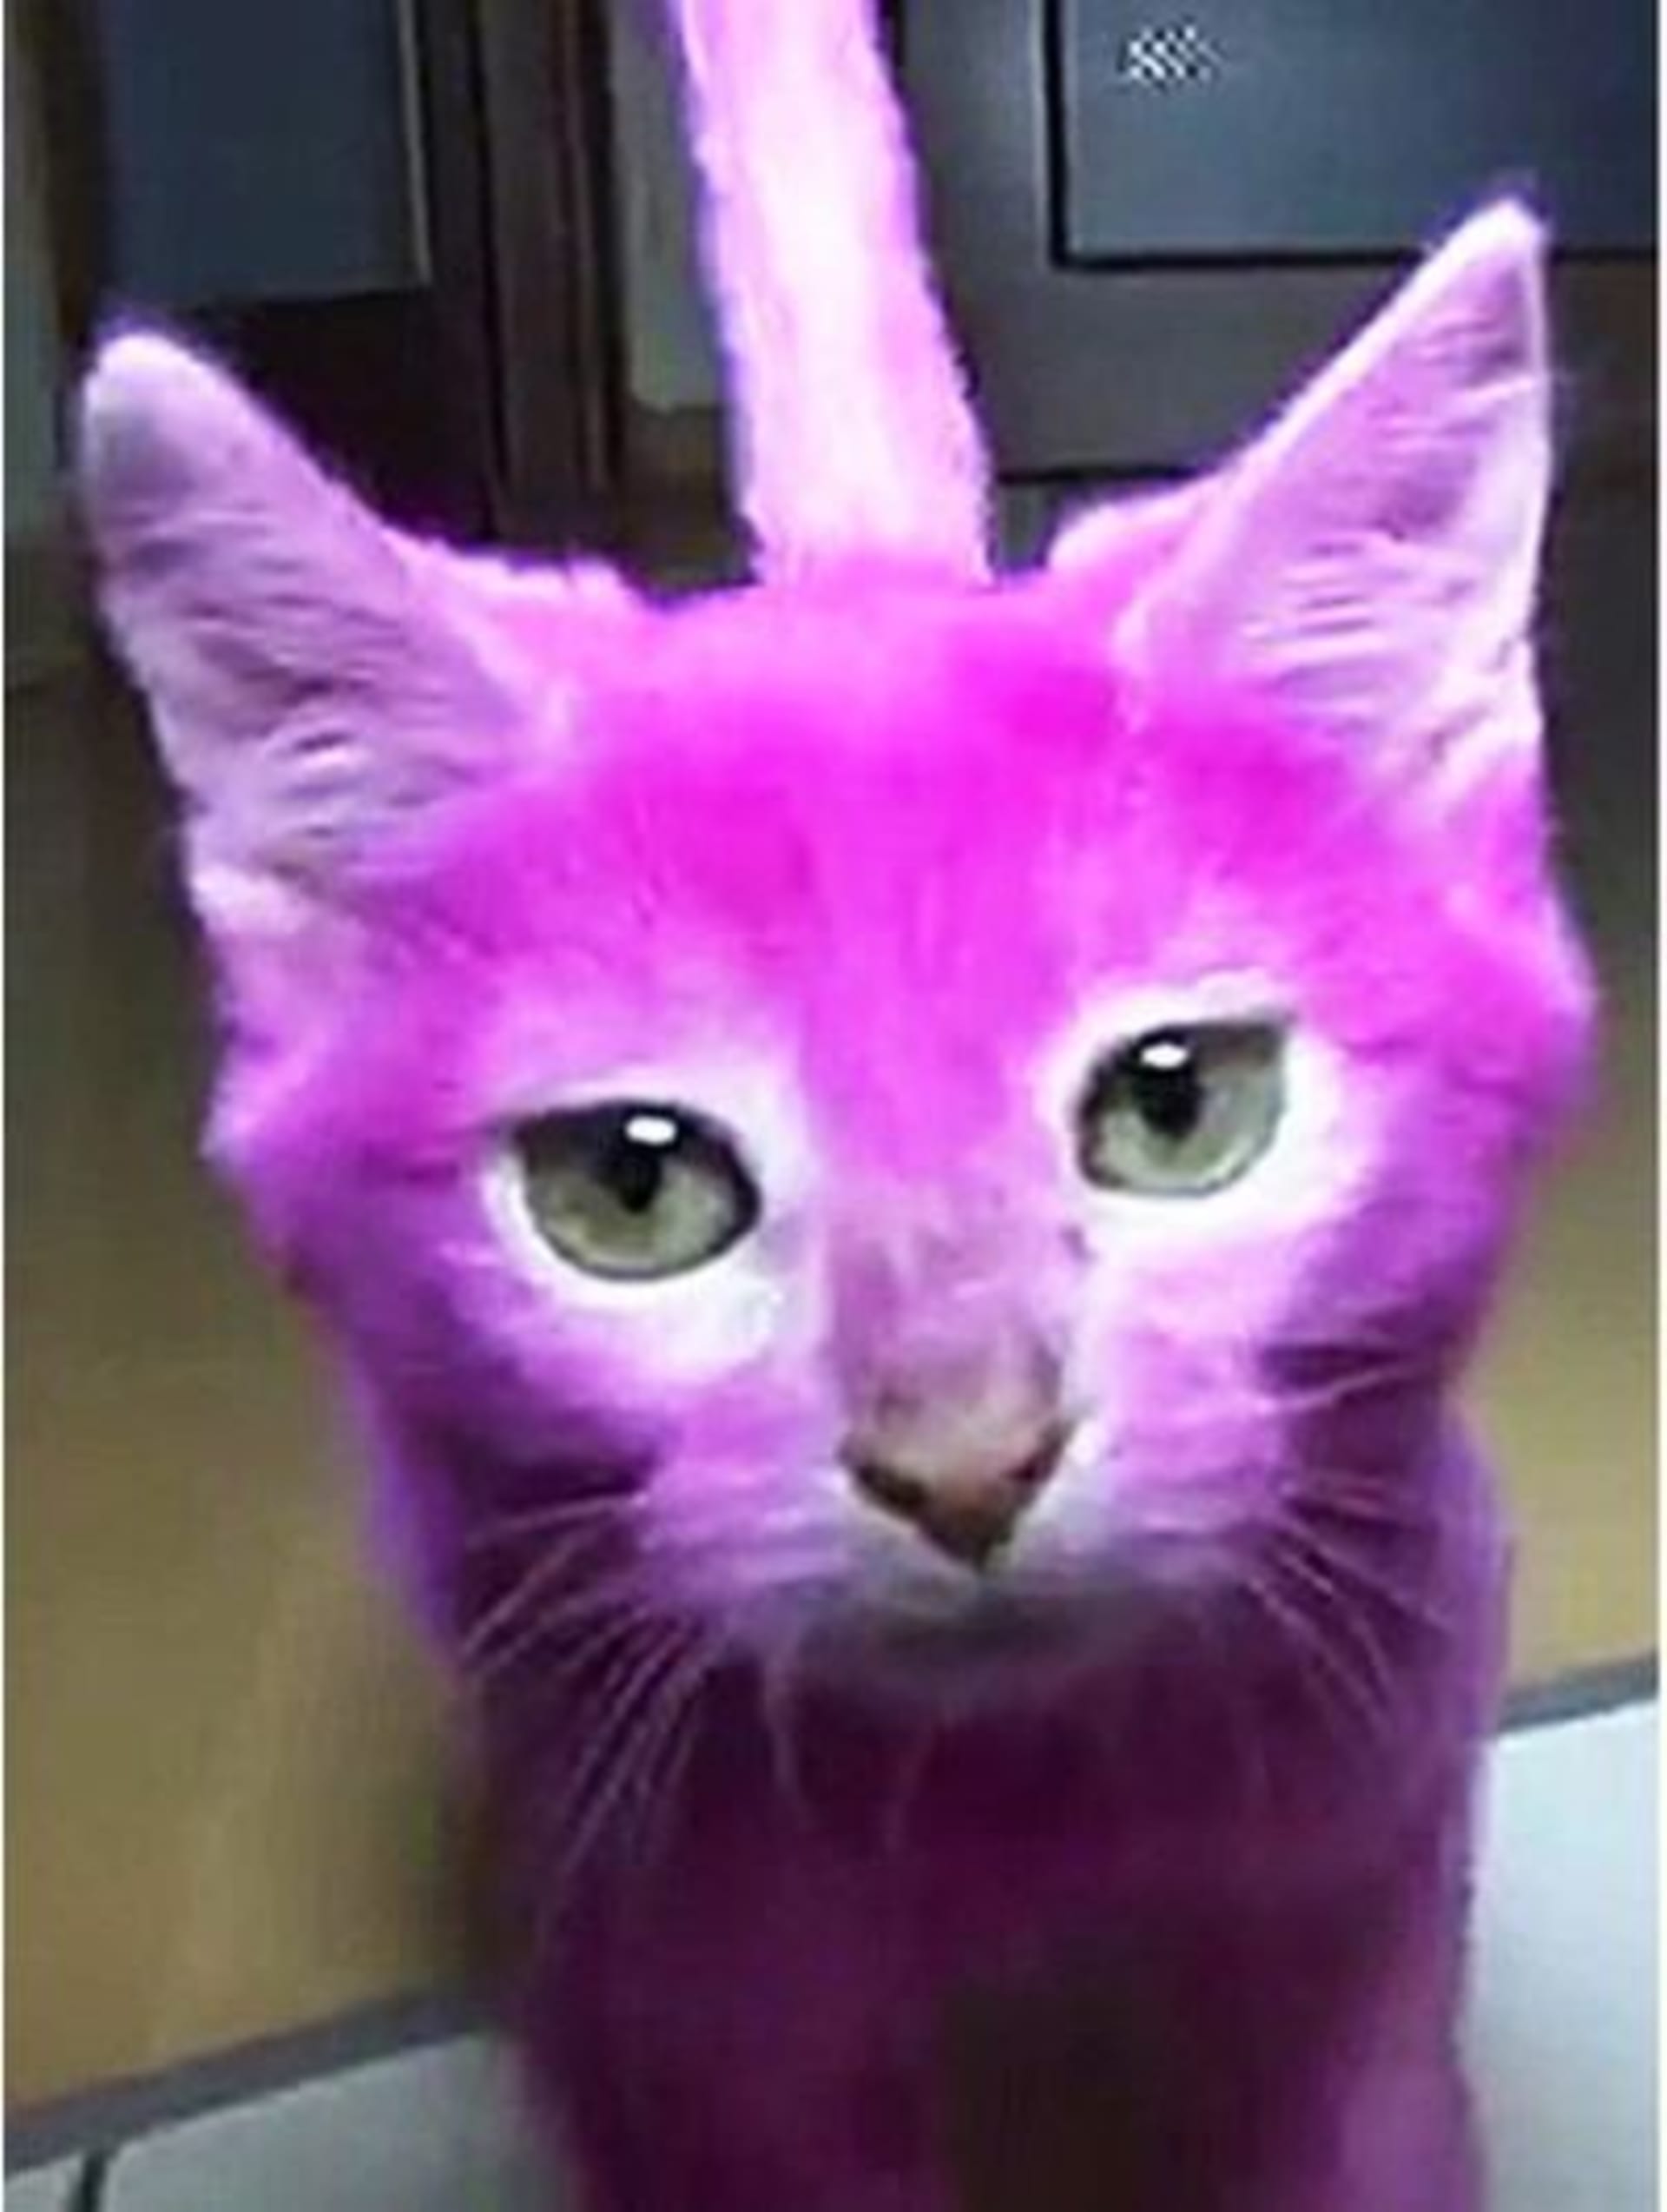 Tohle kotě rozmar své majitelky nepřežilo, zemřelo na otravu po olizování nabarvené srsti.